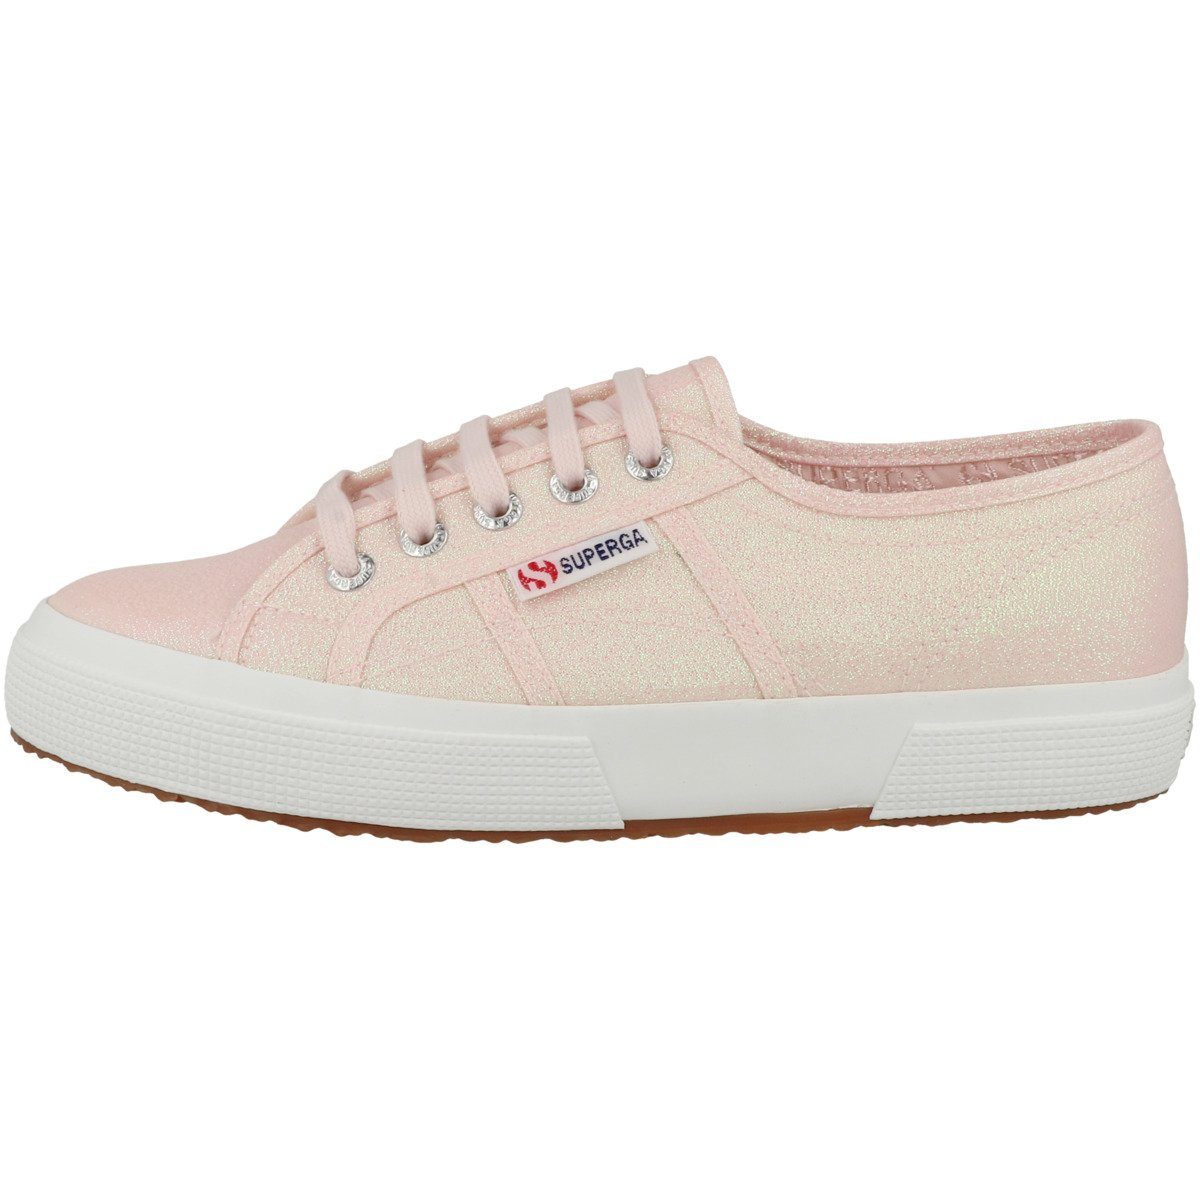 Superga 2750 Lamew Damen Sneaker keine besonderen Merkmale rosa